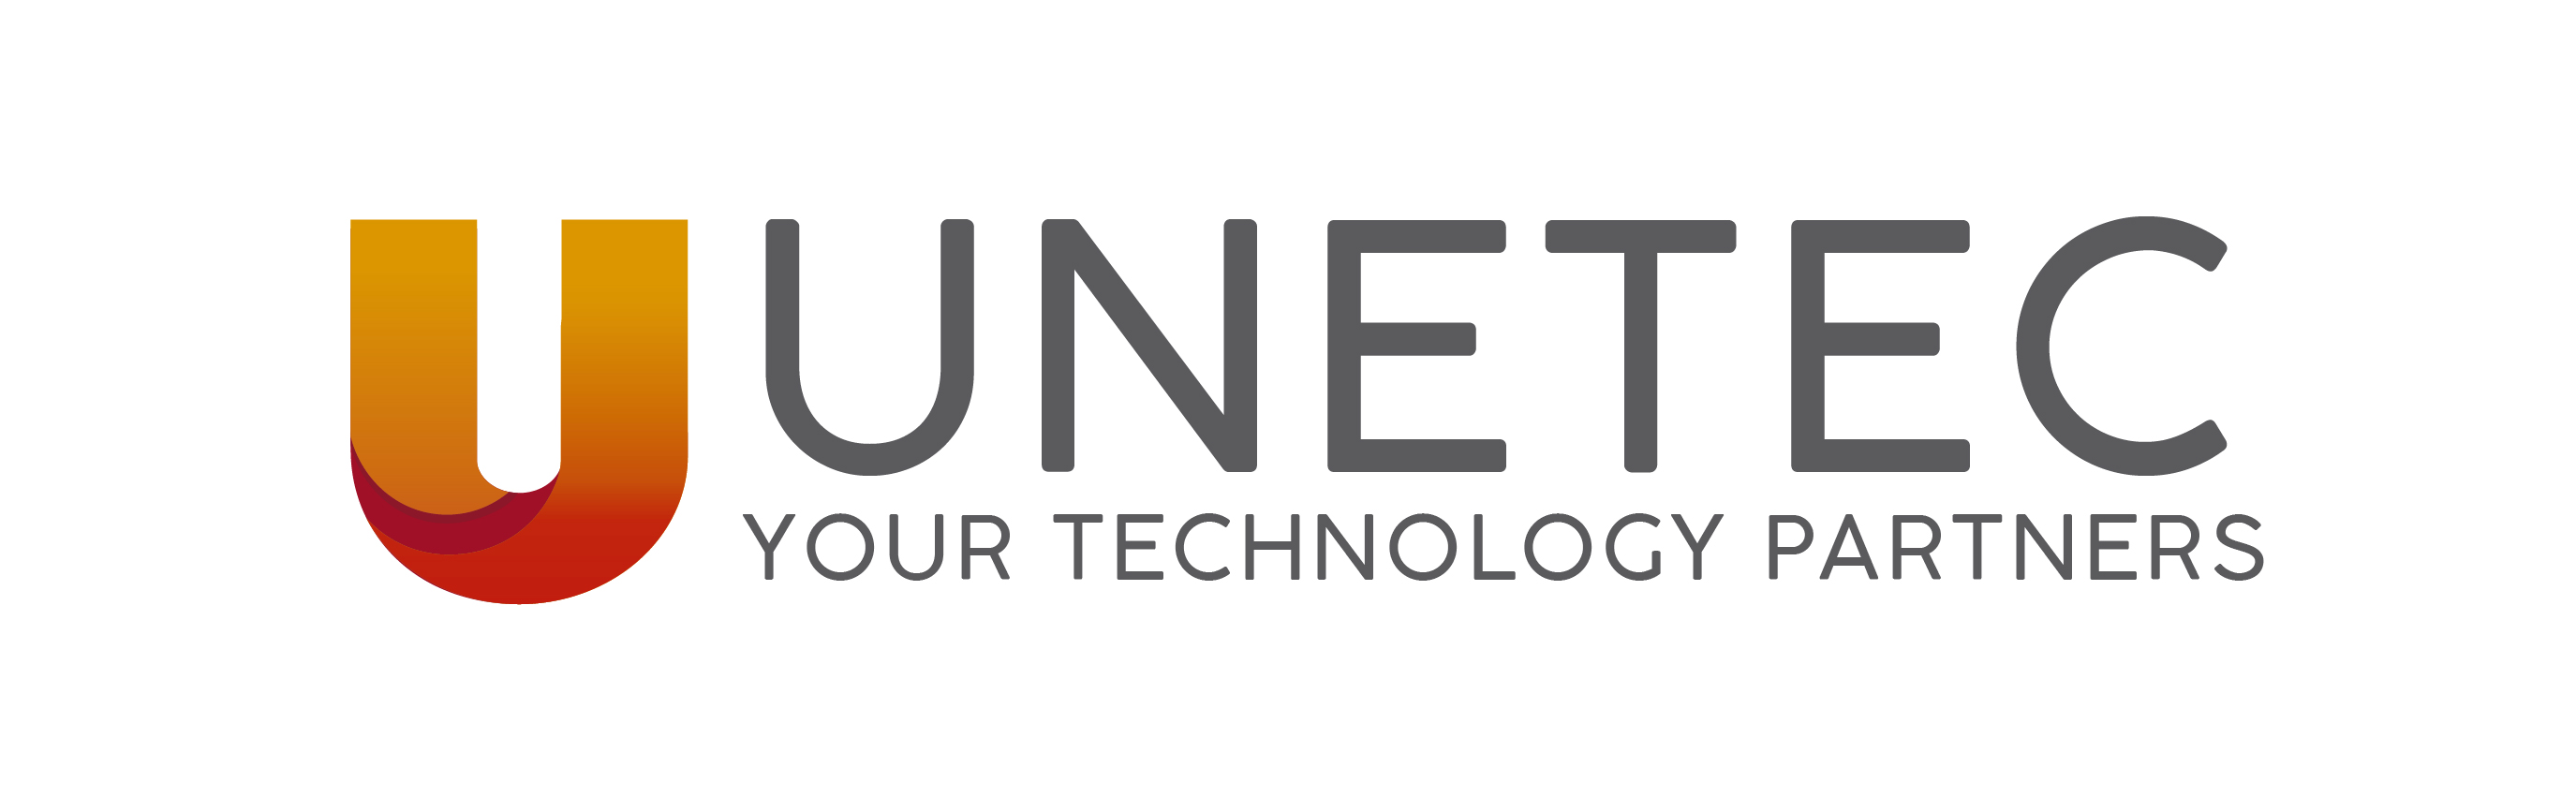 IT Support | UNETEC